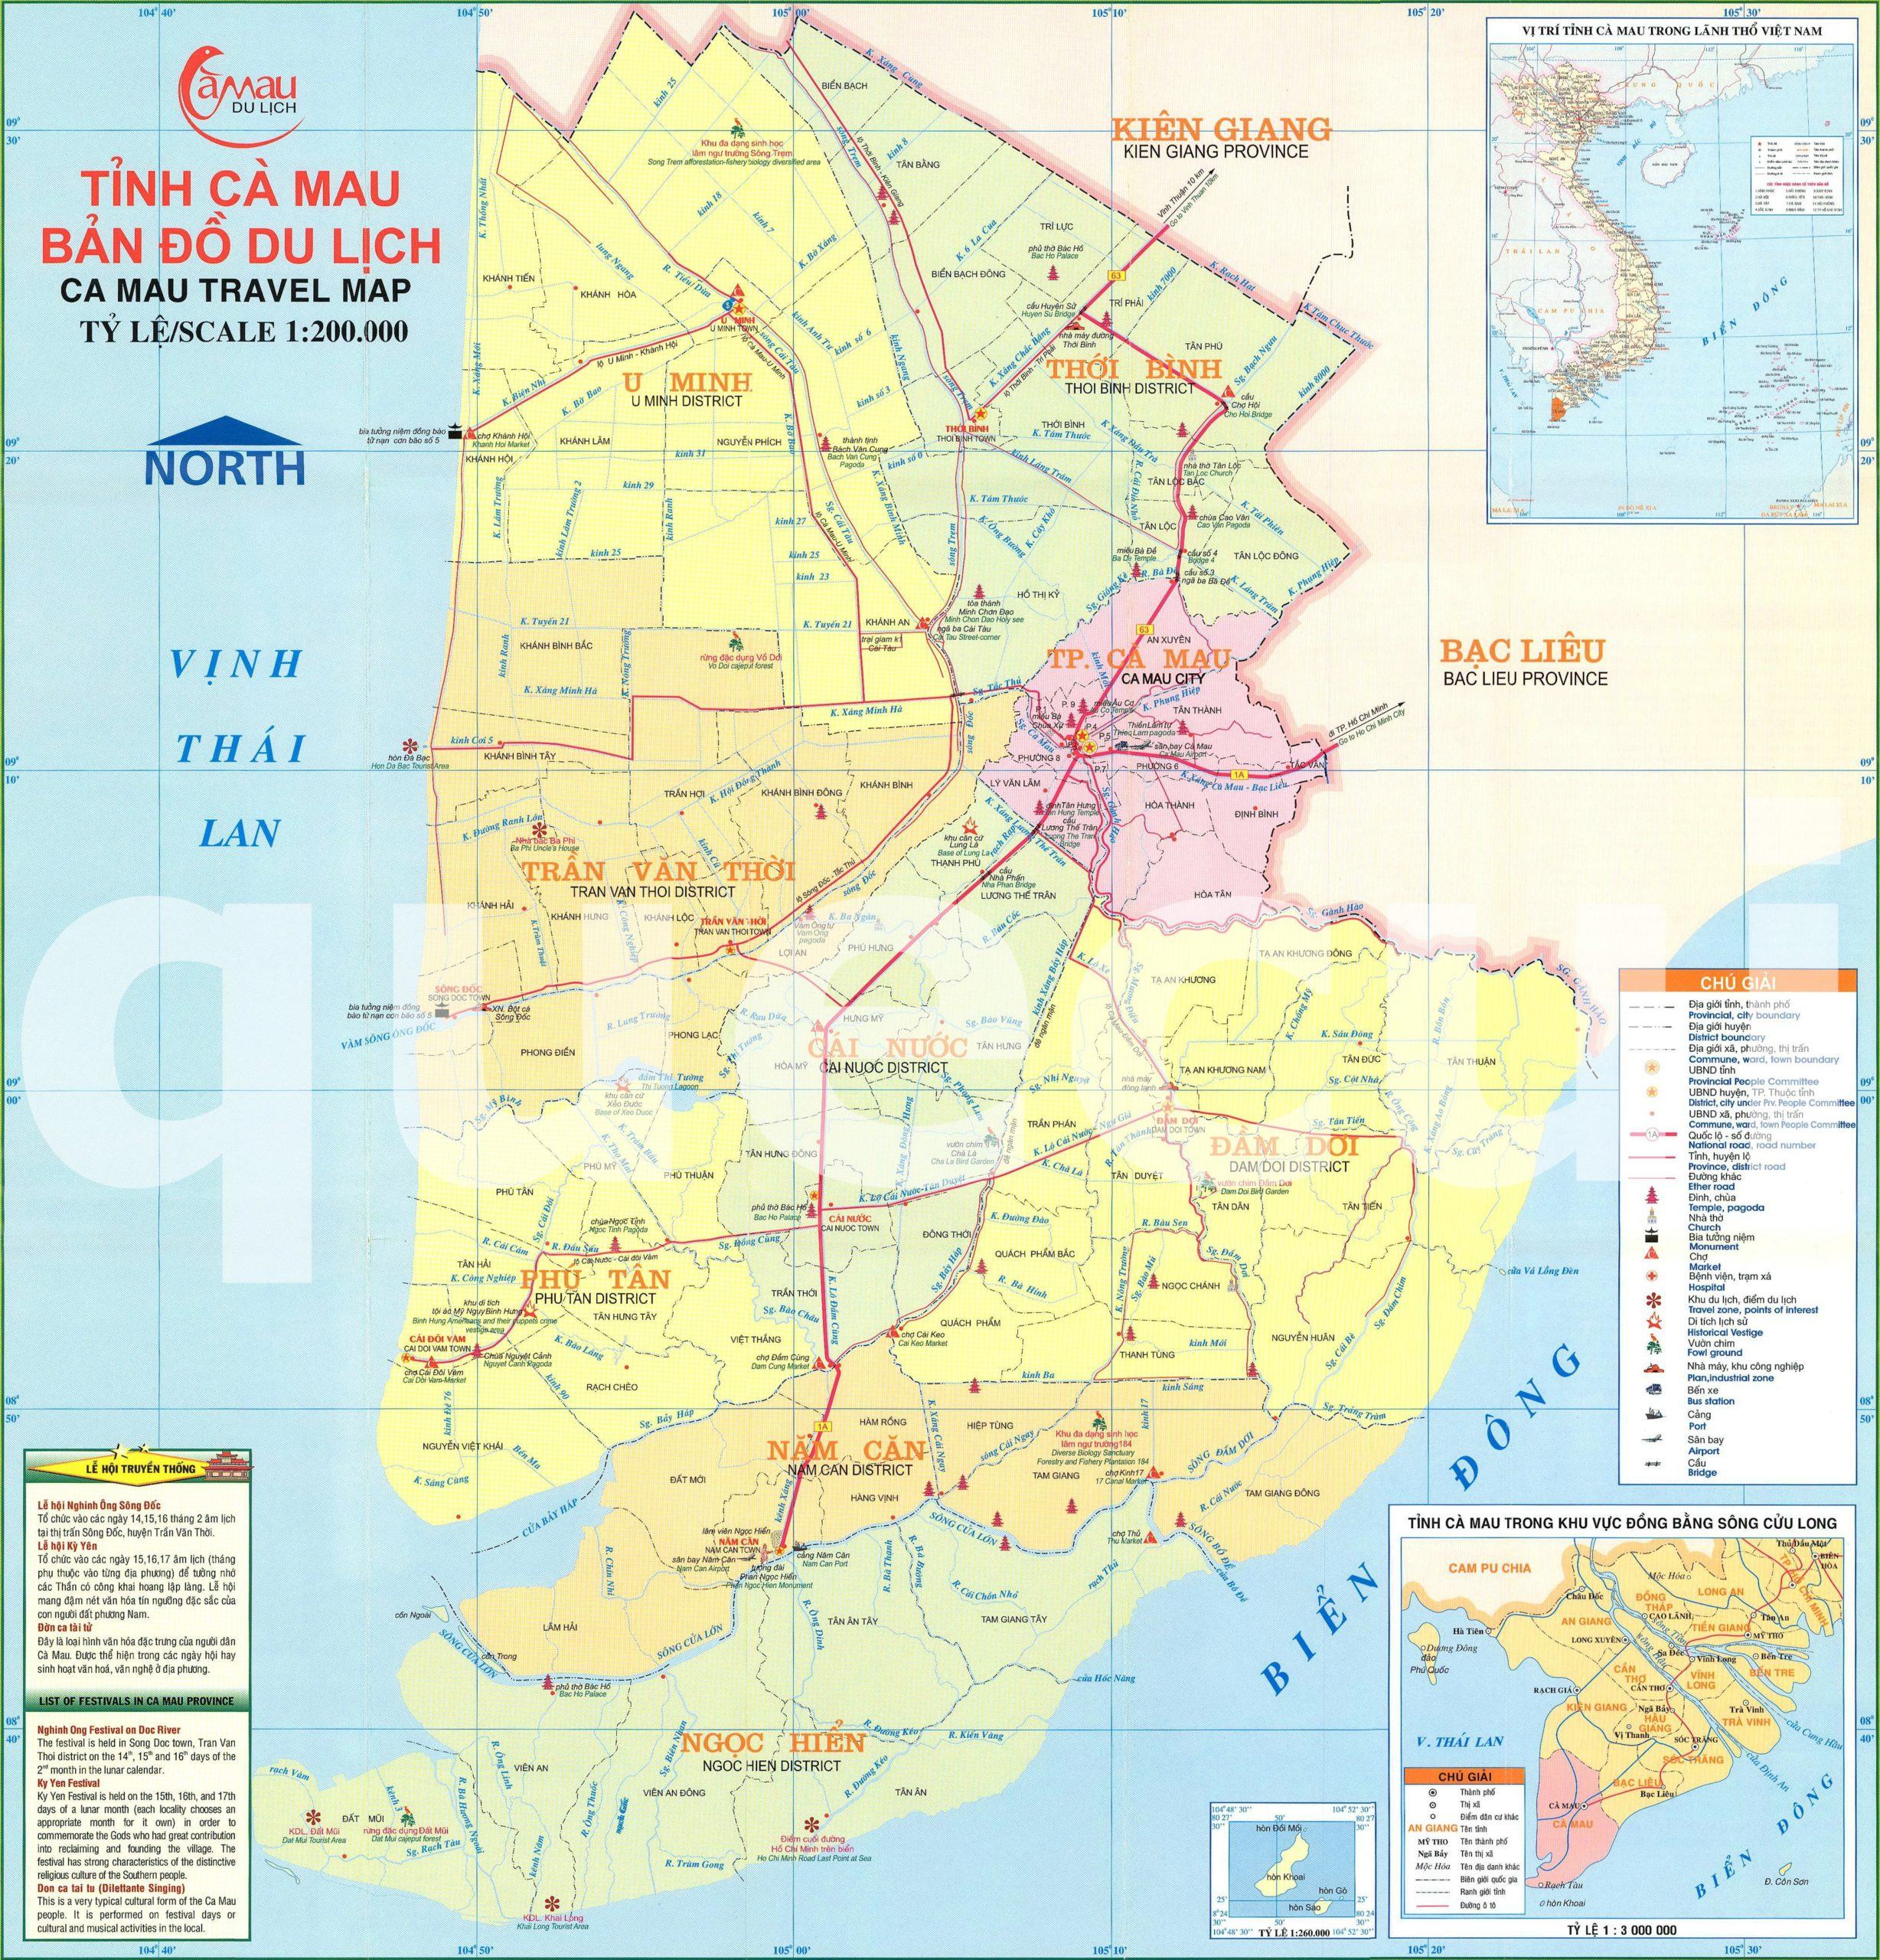 Bản đồ các địa điểm du lịch tại tỉnh Cà Mau - Địa điểm du lịch tỉnh Cà Mau